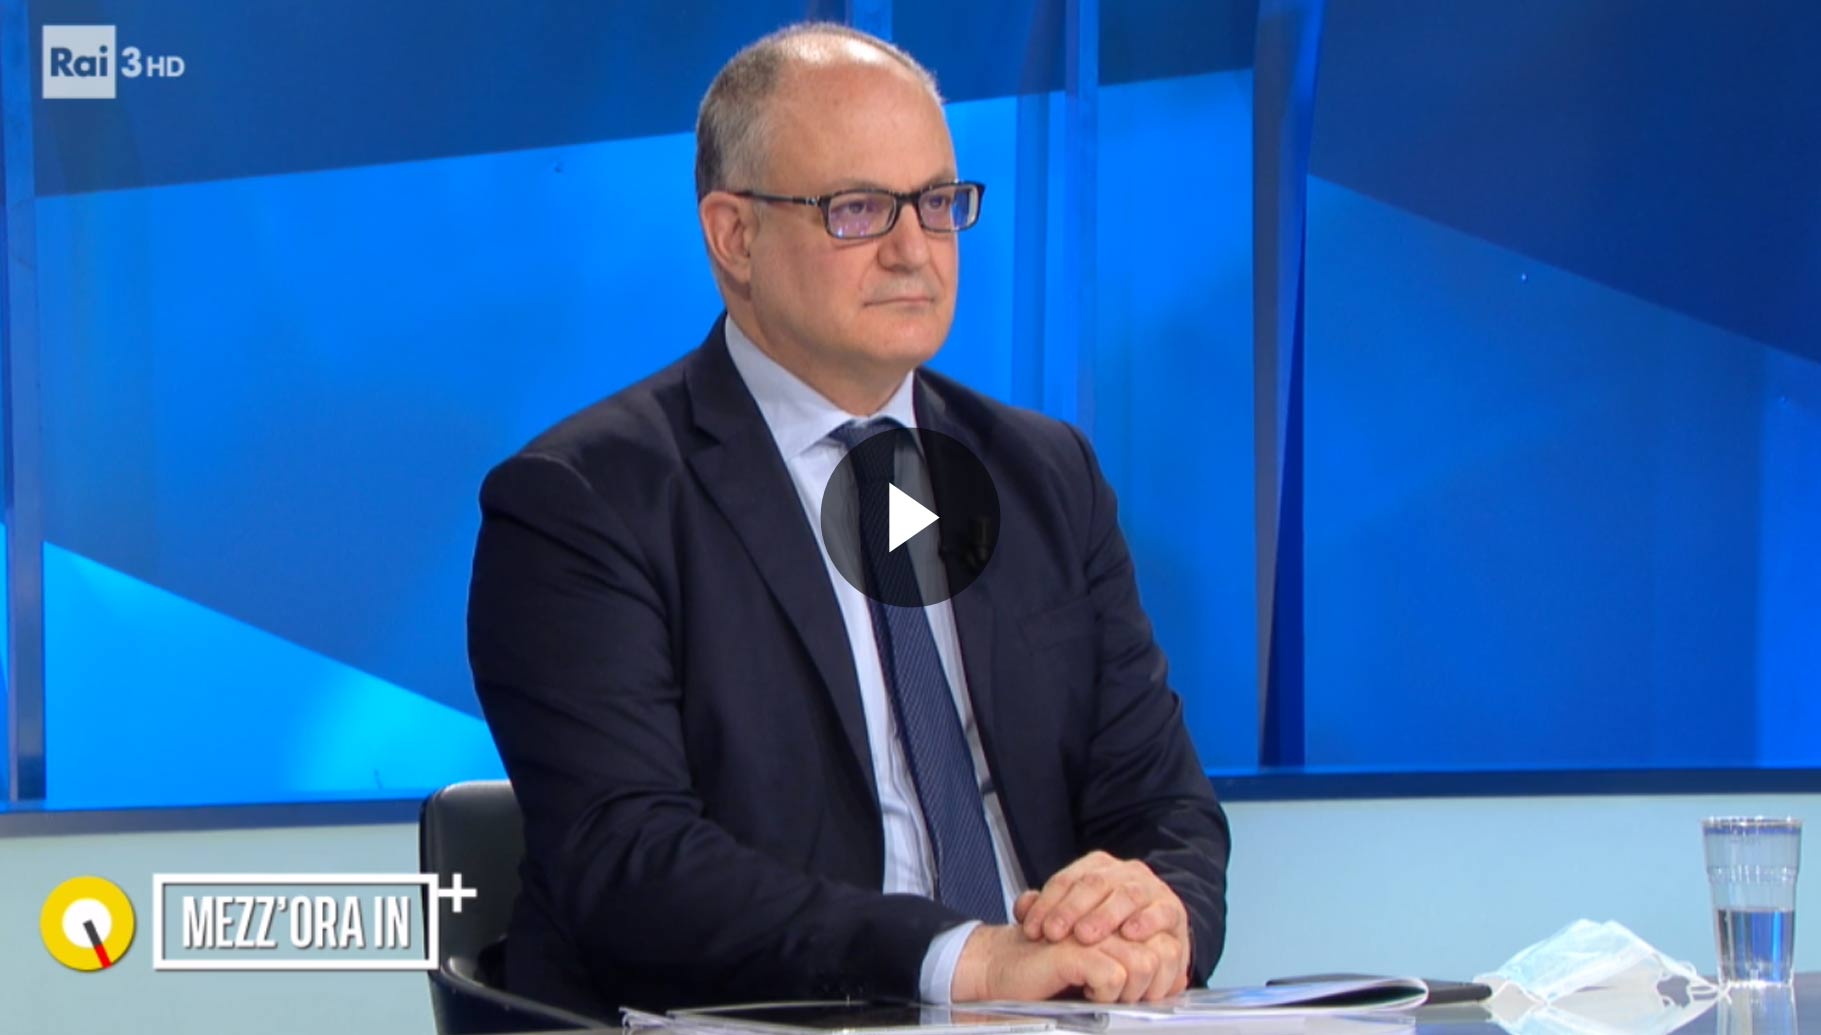 Intervista del ministro Gualtieri a “Mezz’ora in più” (Rai3) - Vai al video